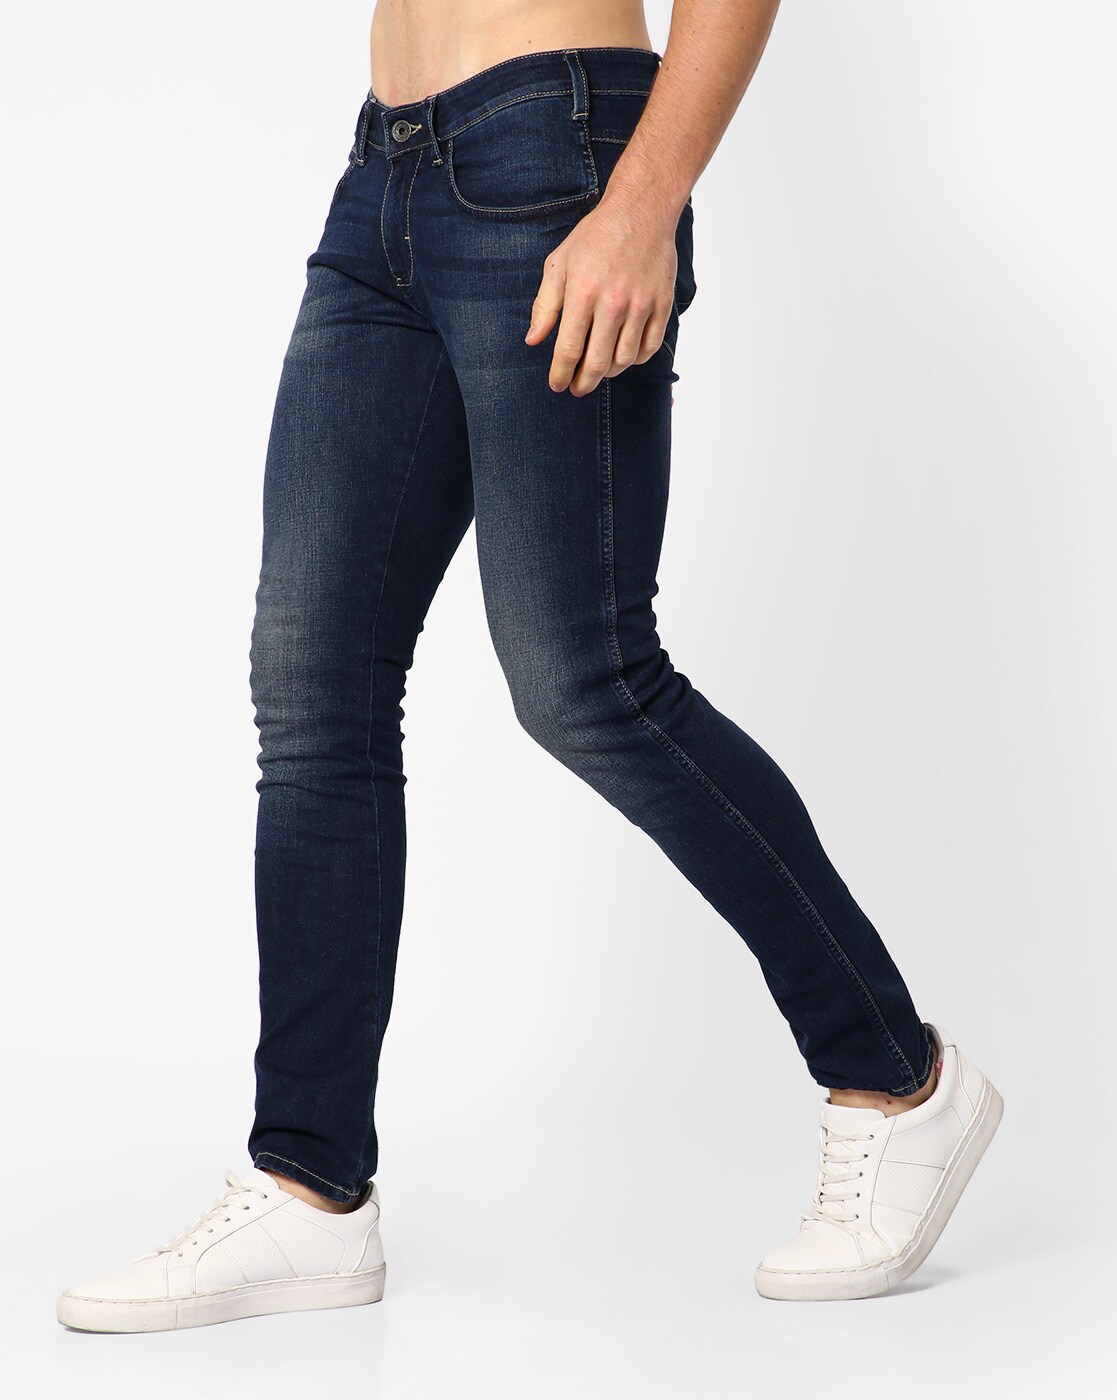 Buy Blue Jeans for Men by WRANGLER Online 